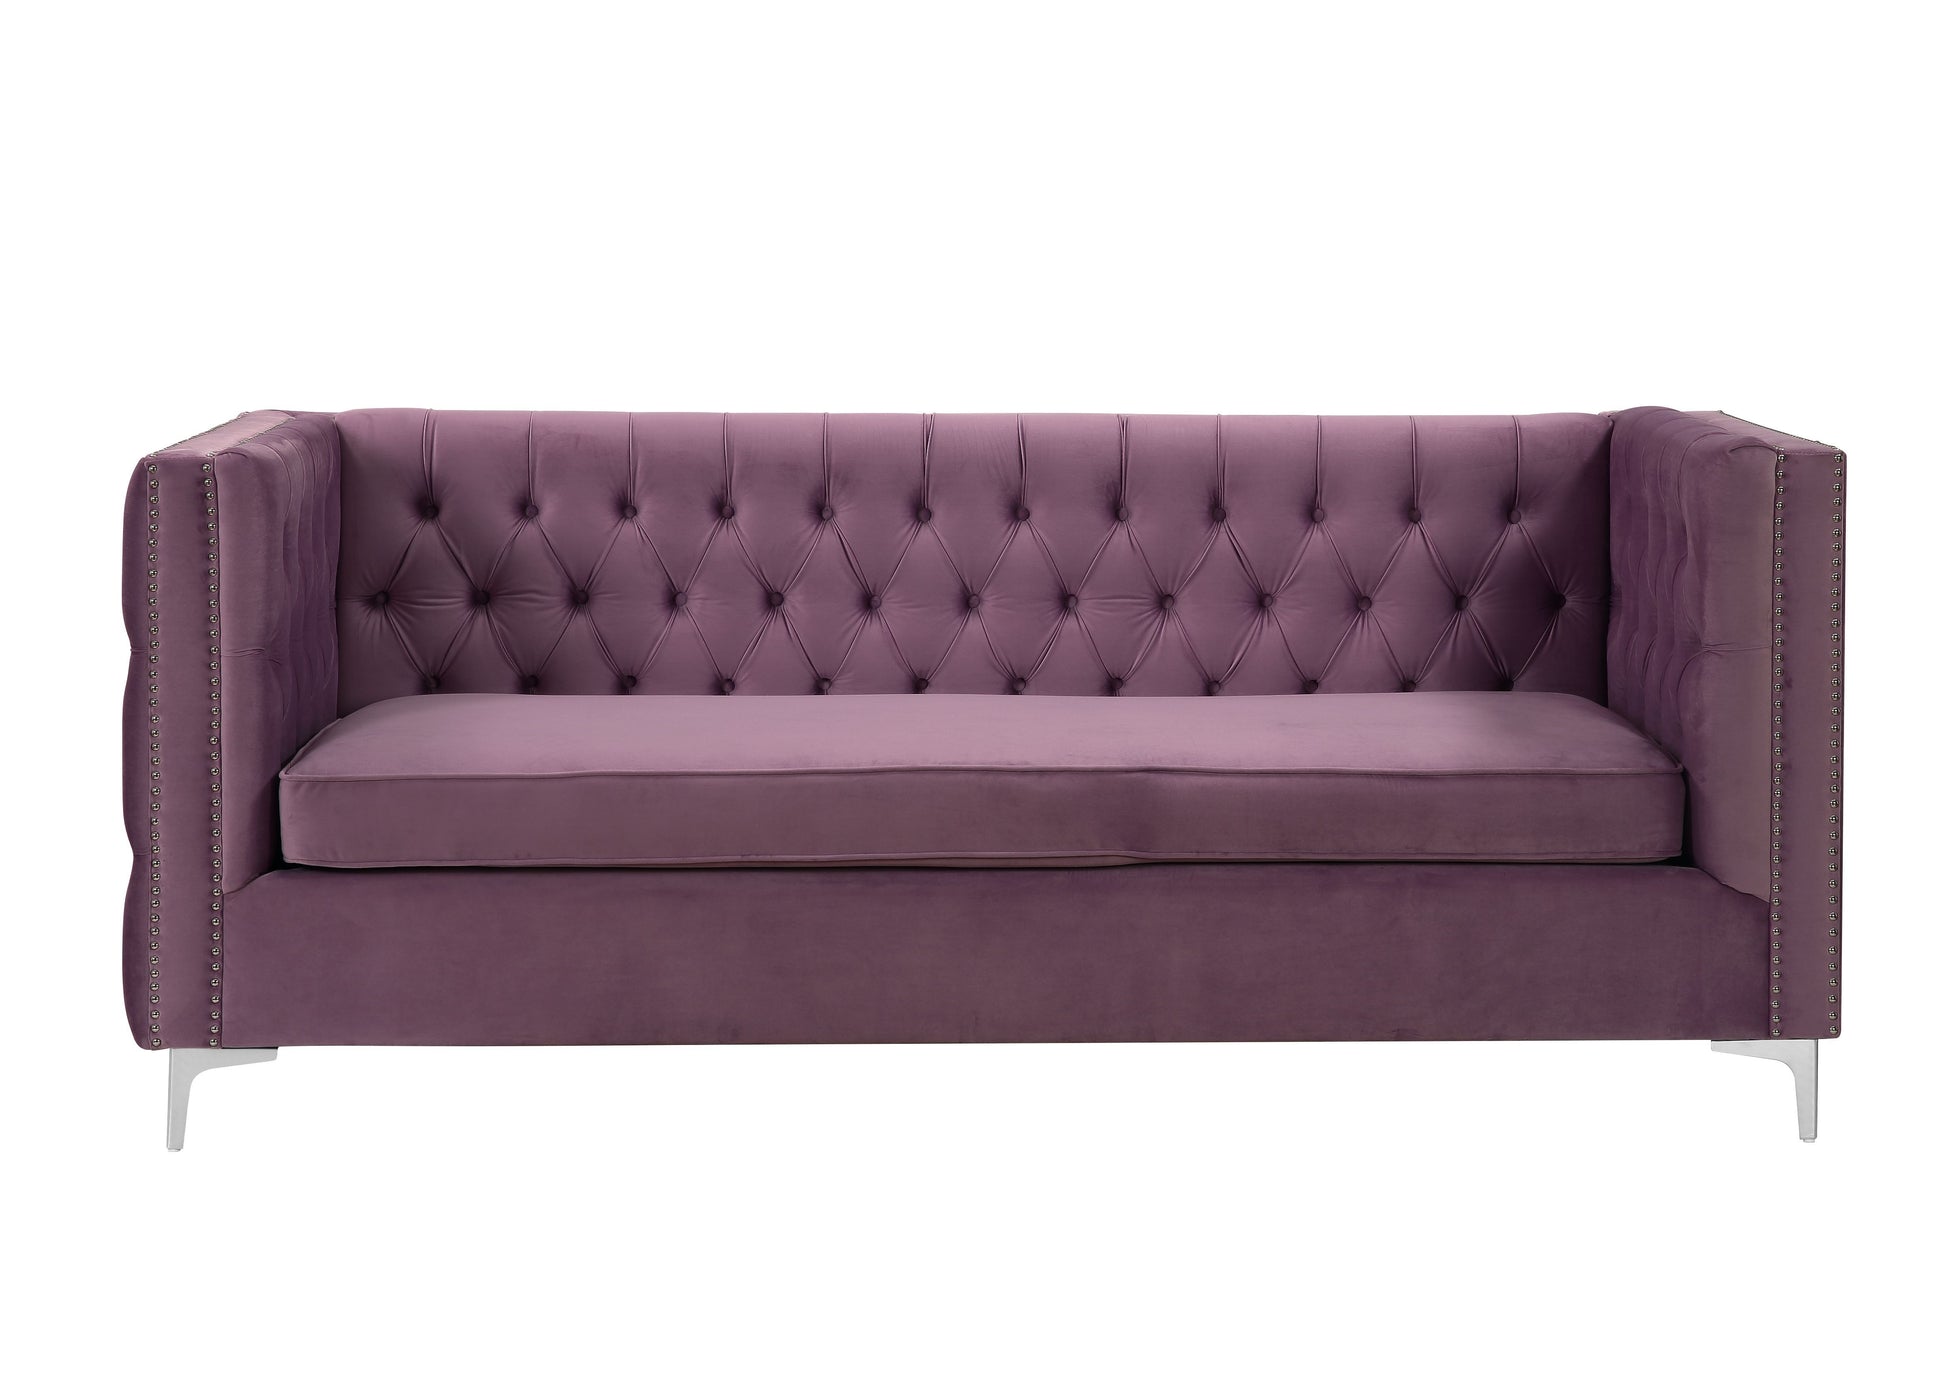 Rhett Tufted Velvet Sectional in Lavender - ACME 55500